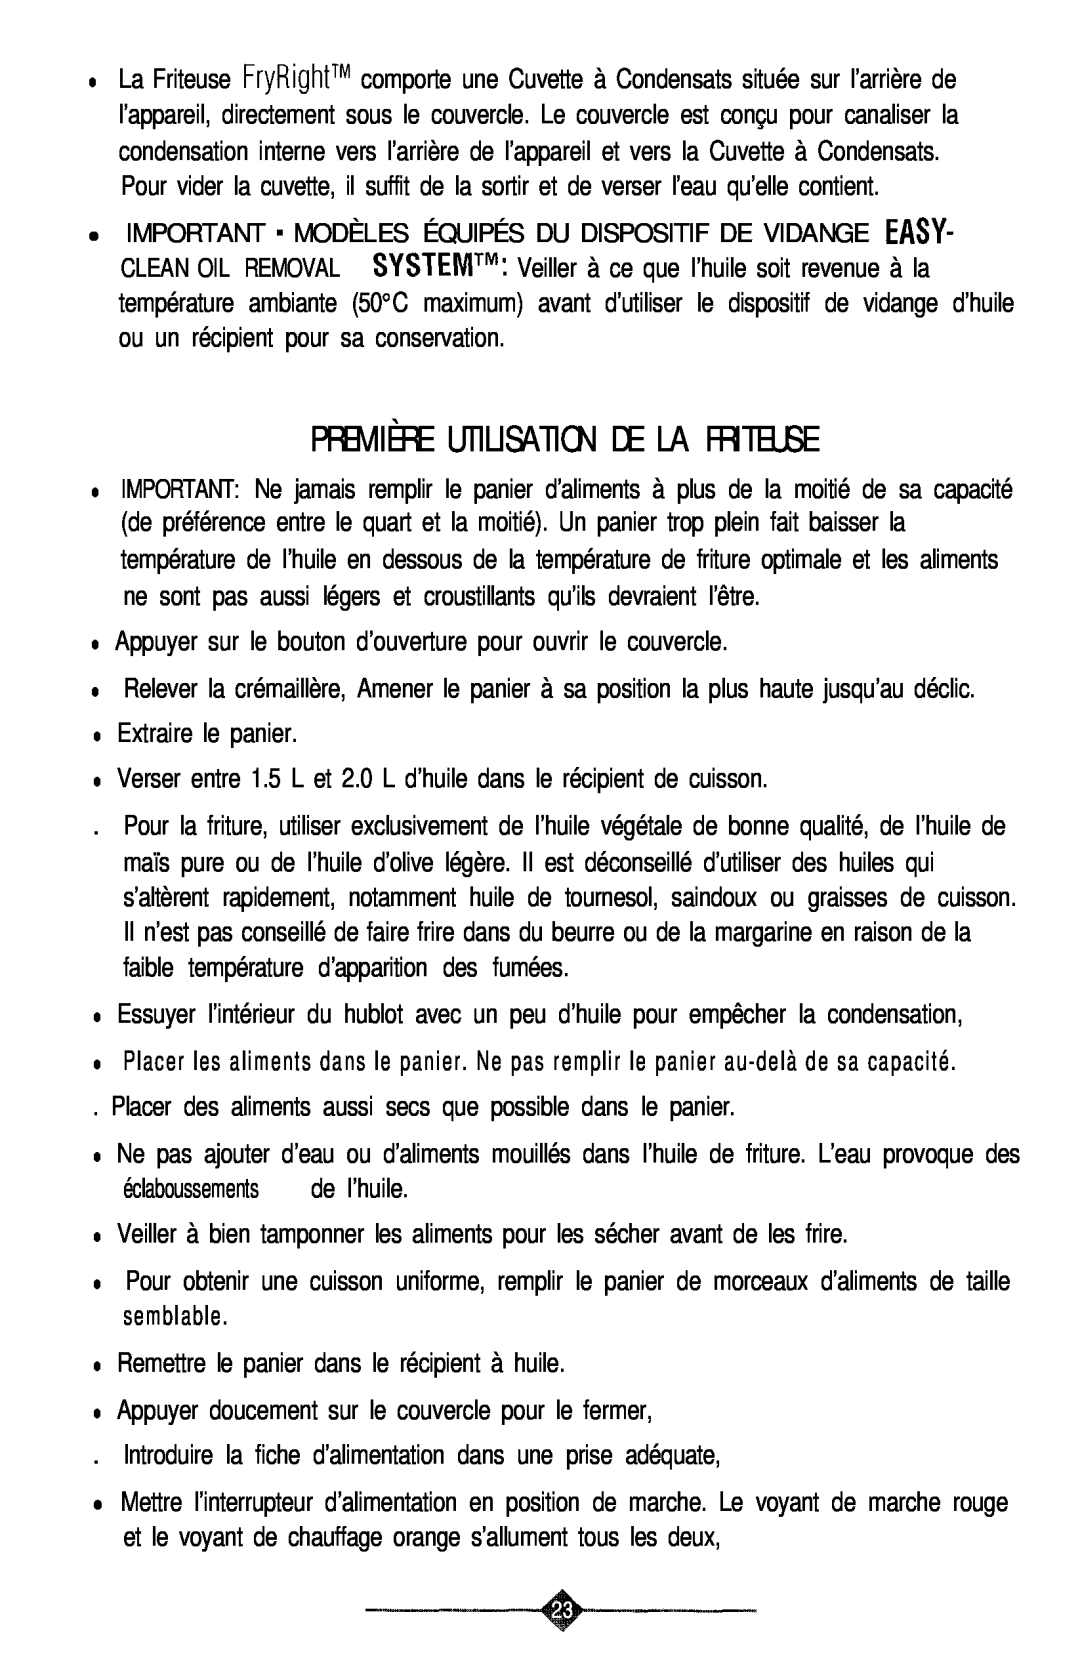 Sunbeam 3240, 3241 manual Première Utilisation De La Friteuse 